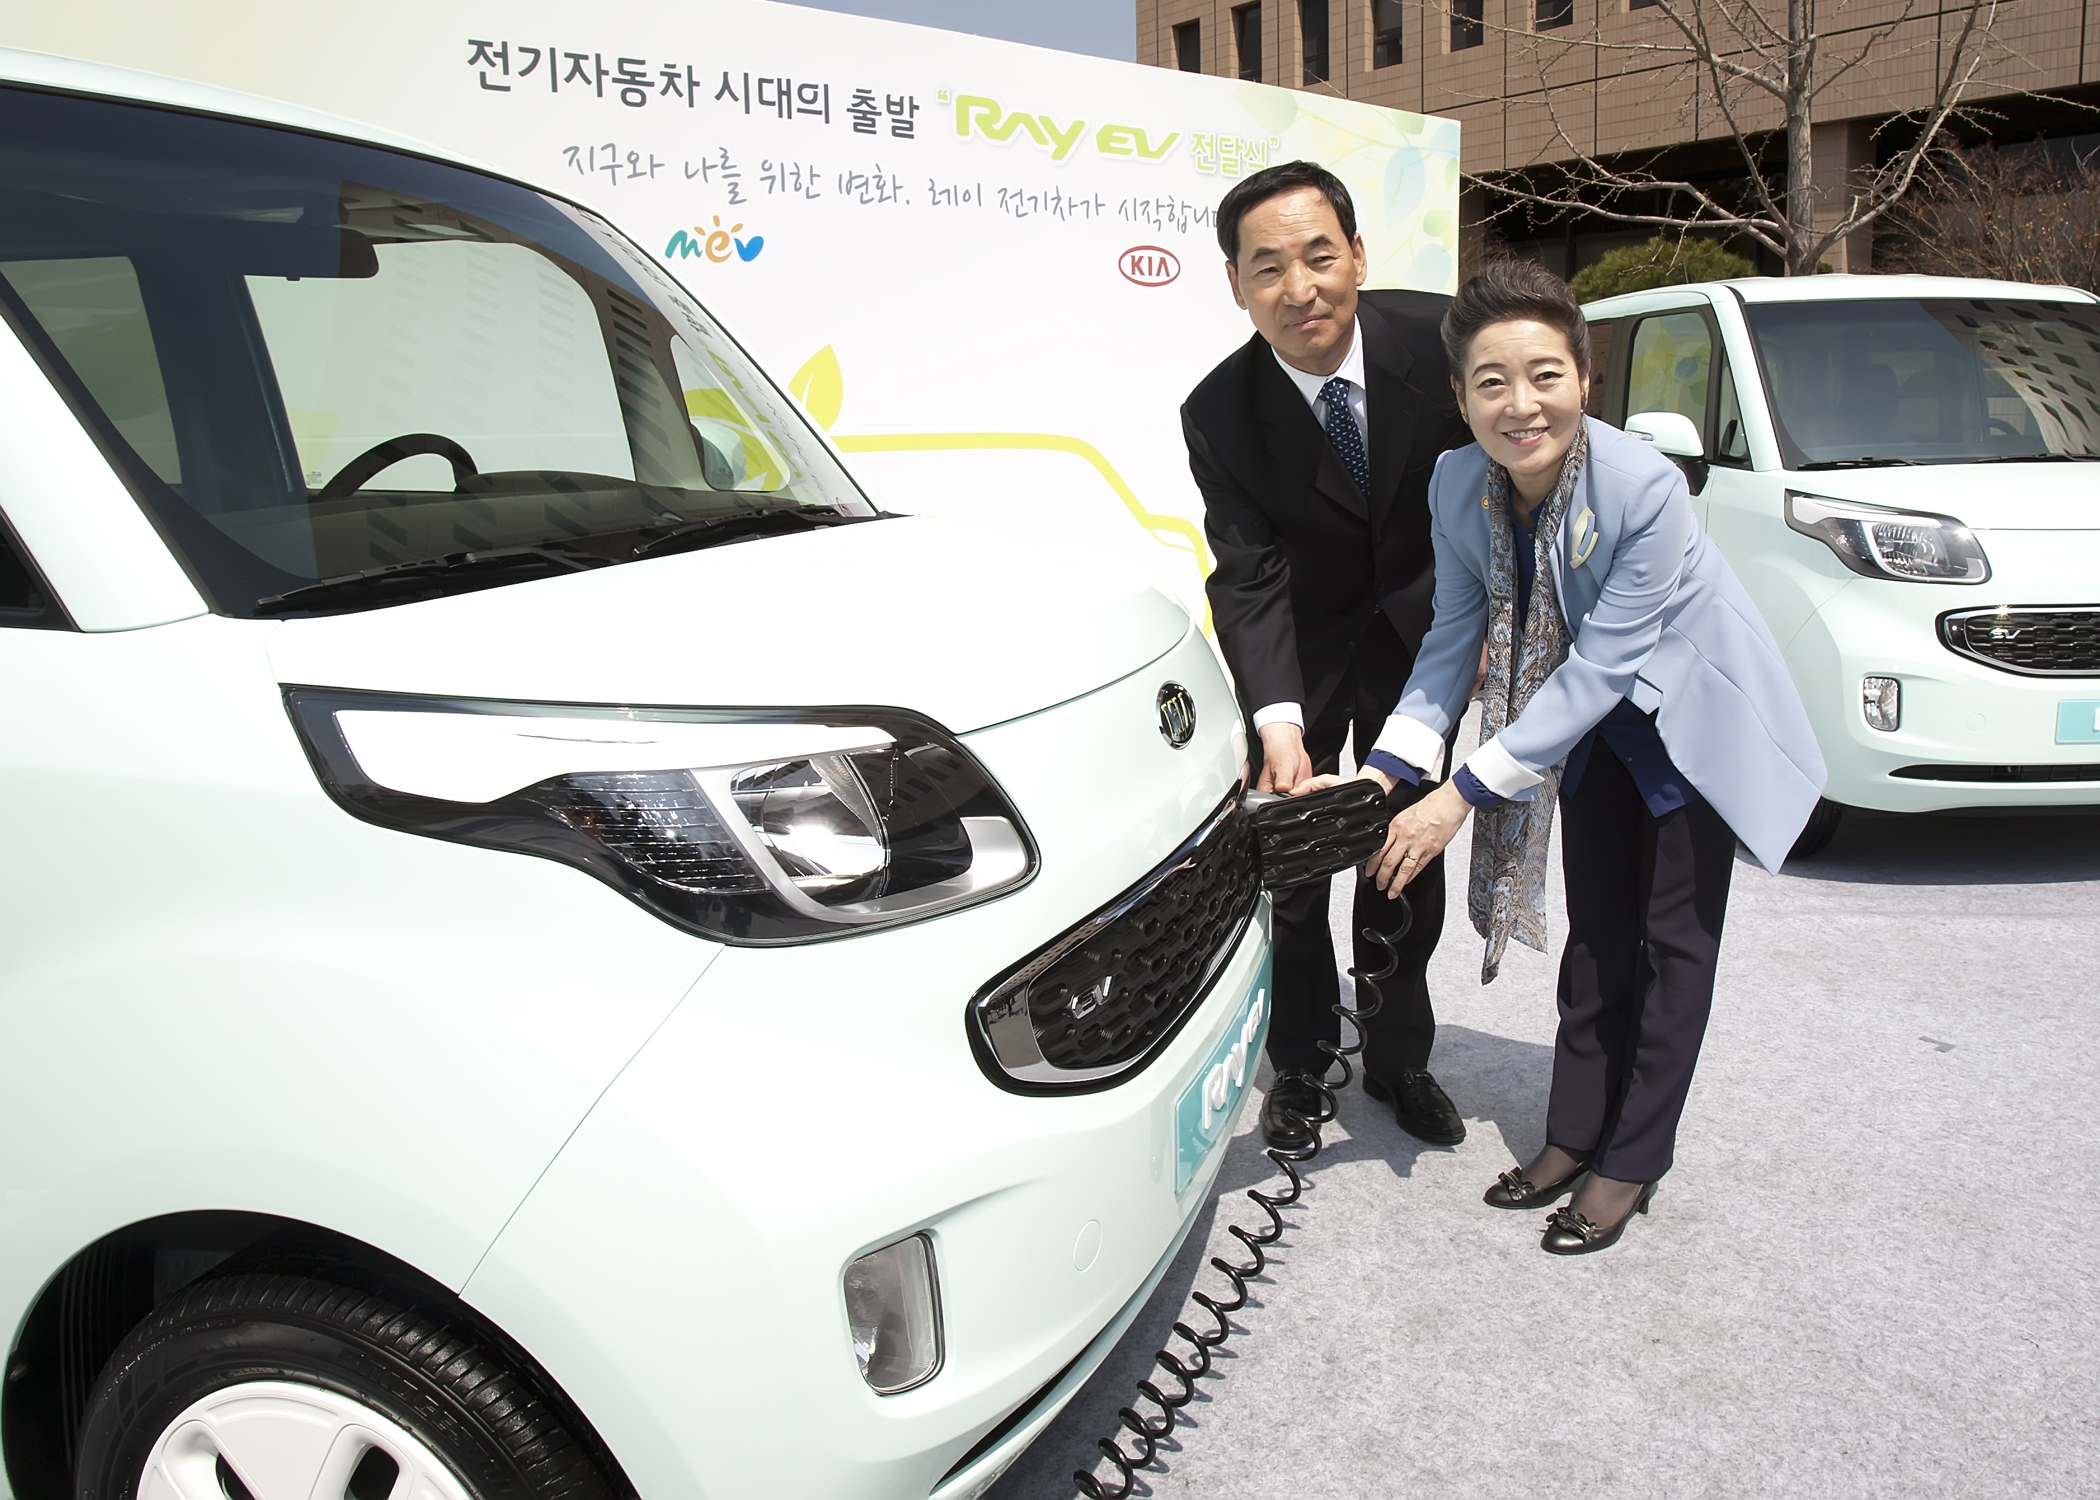 유영숙 환경부 장관, ‘2012년 전기자동차 보급사업 출범식‘을 개최 섬네일 이미지 2